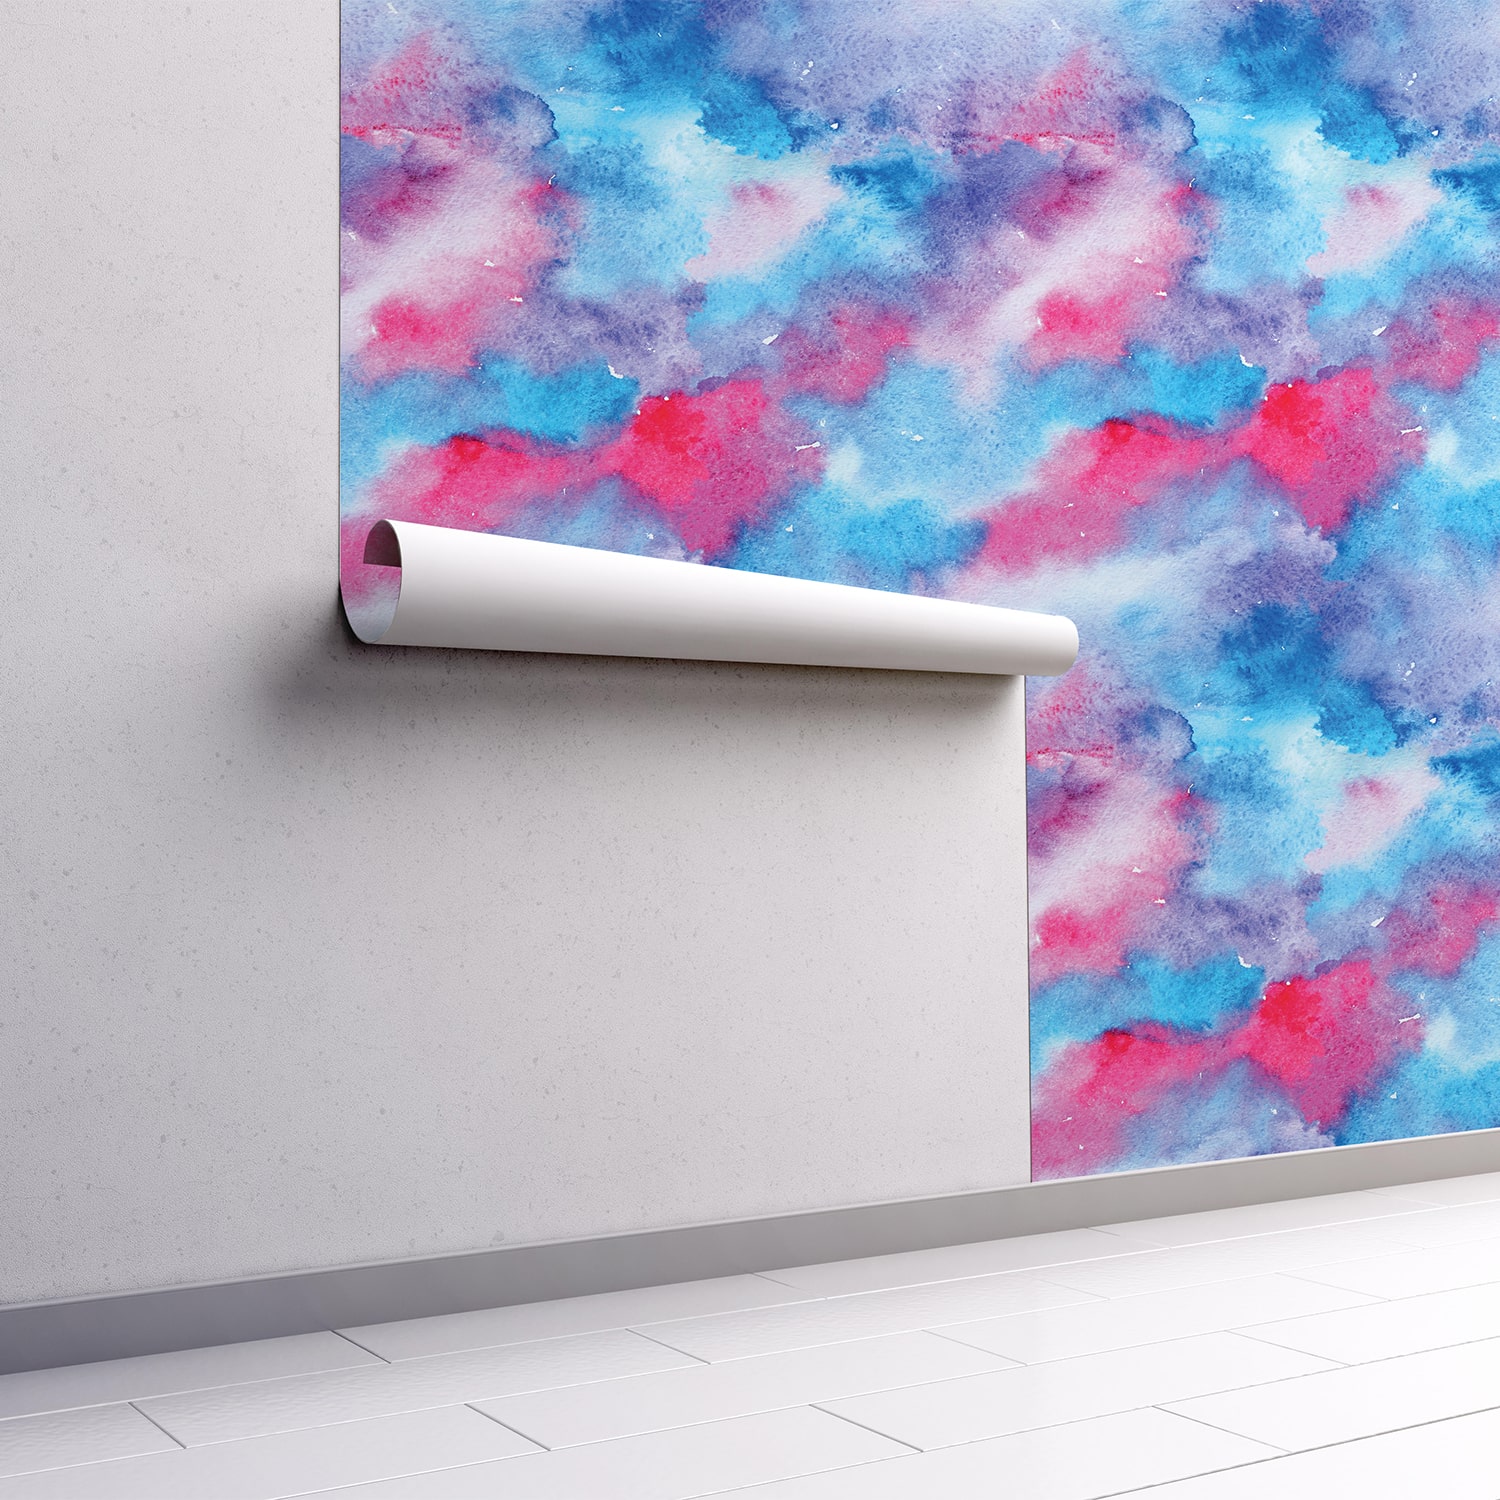 PP70-mur.rouleau-papier-peint-adhesif-decoratif-revetement-vinyle-motifs-aquarelle-dégradé-bleu-et-rose-renovation-meuble-mur-min